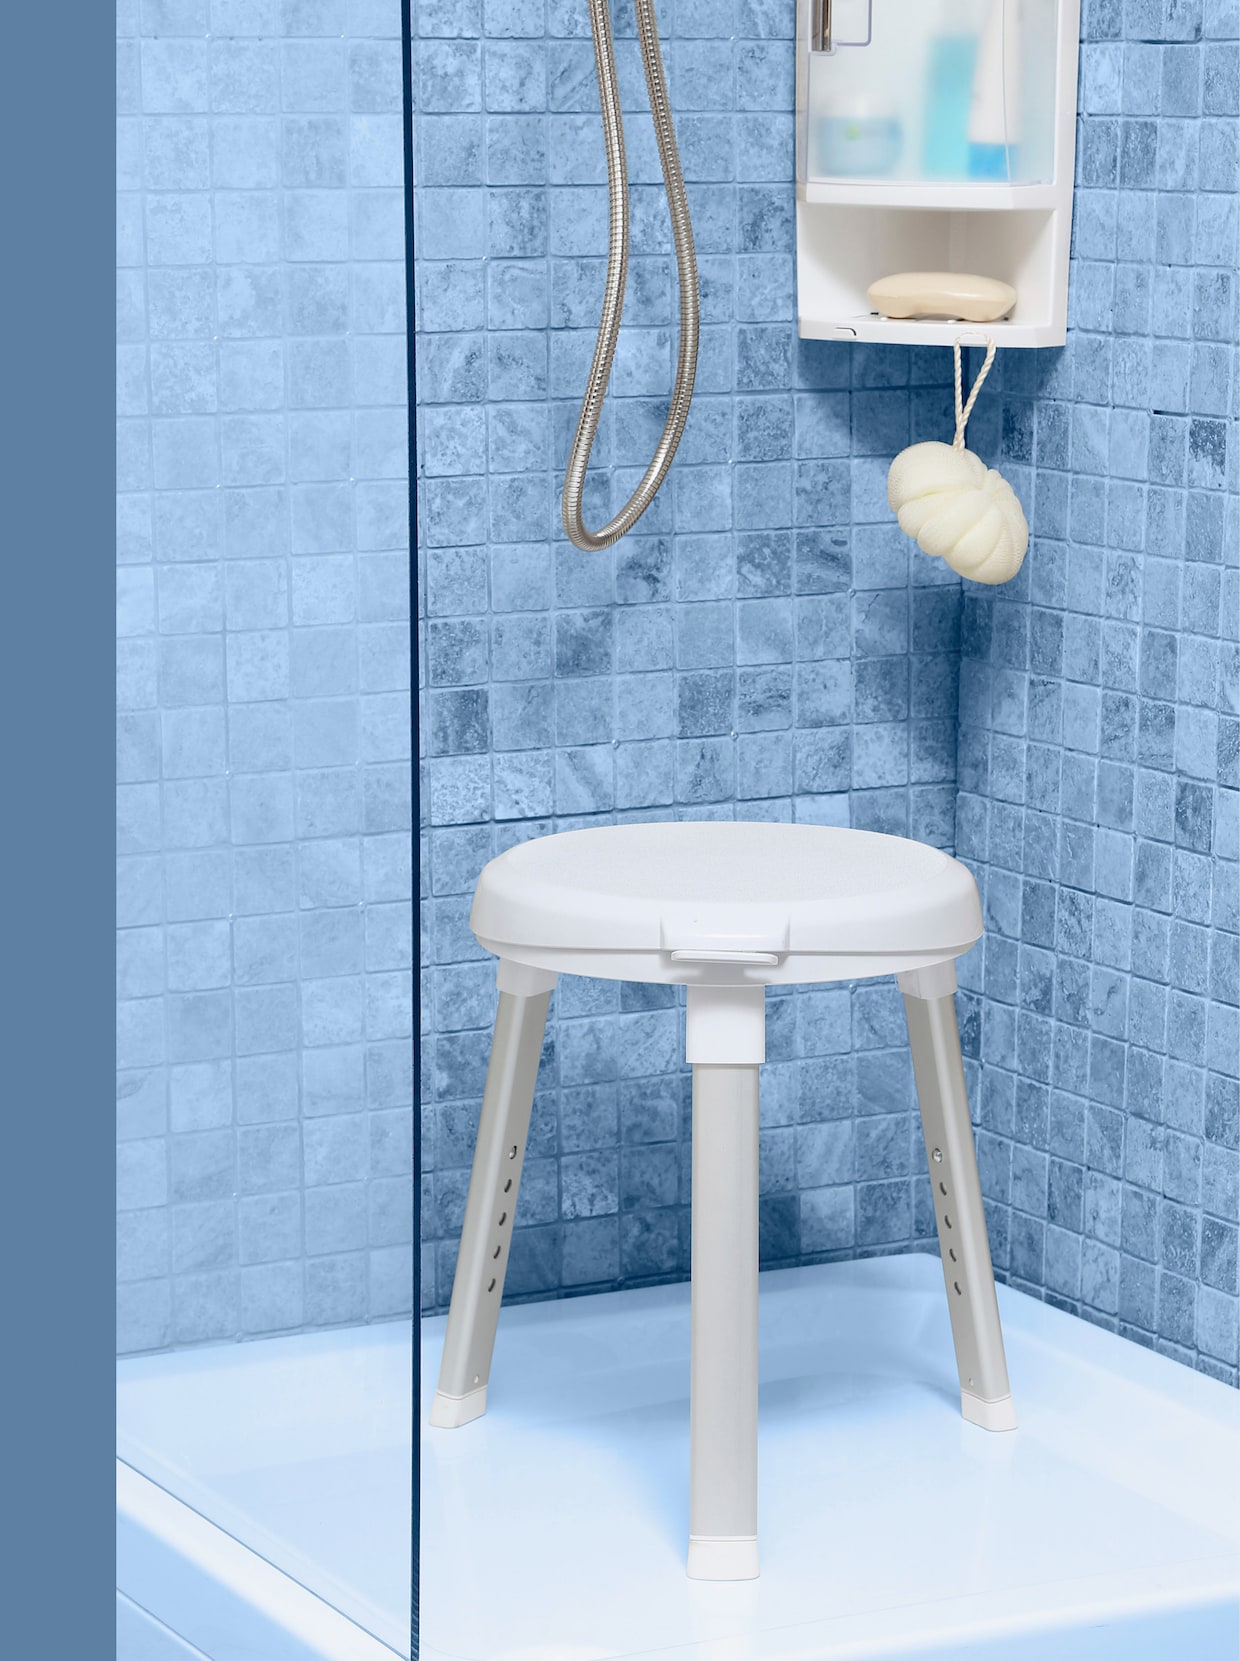 Stolička do sprchy s otočným sedátkem - bílá